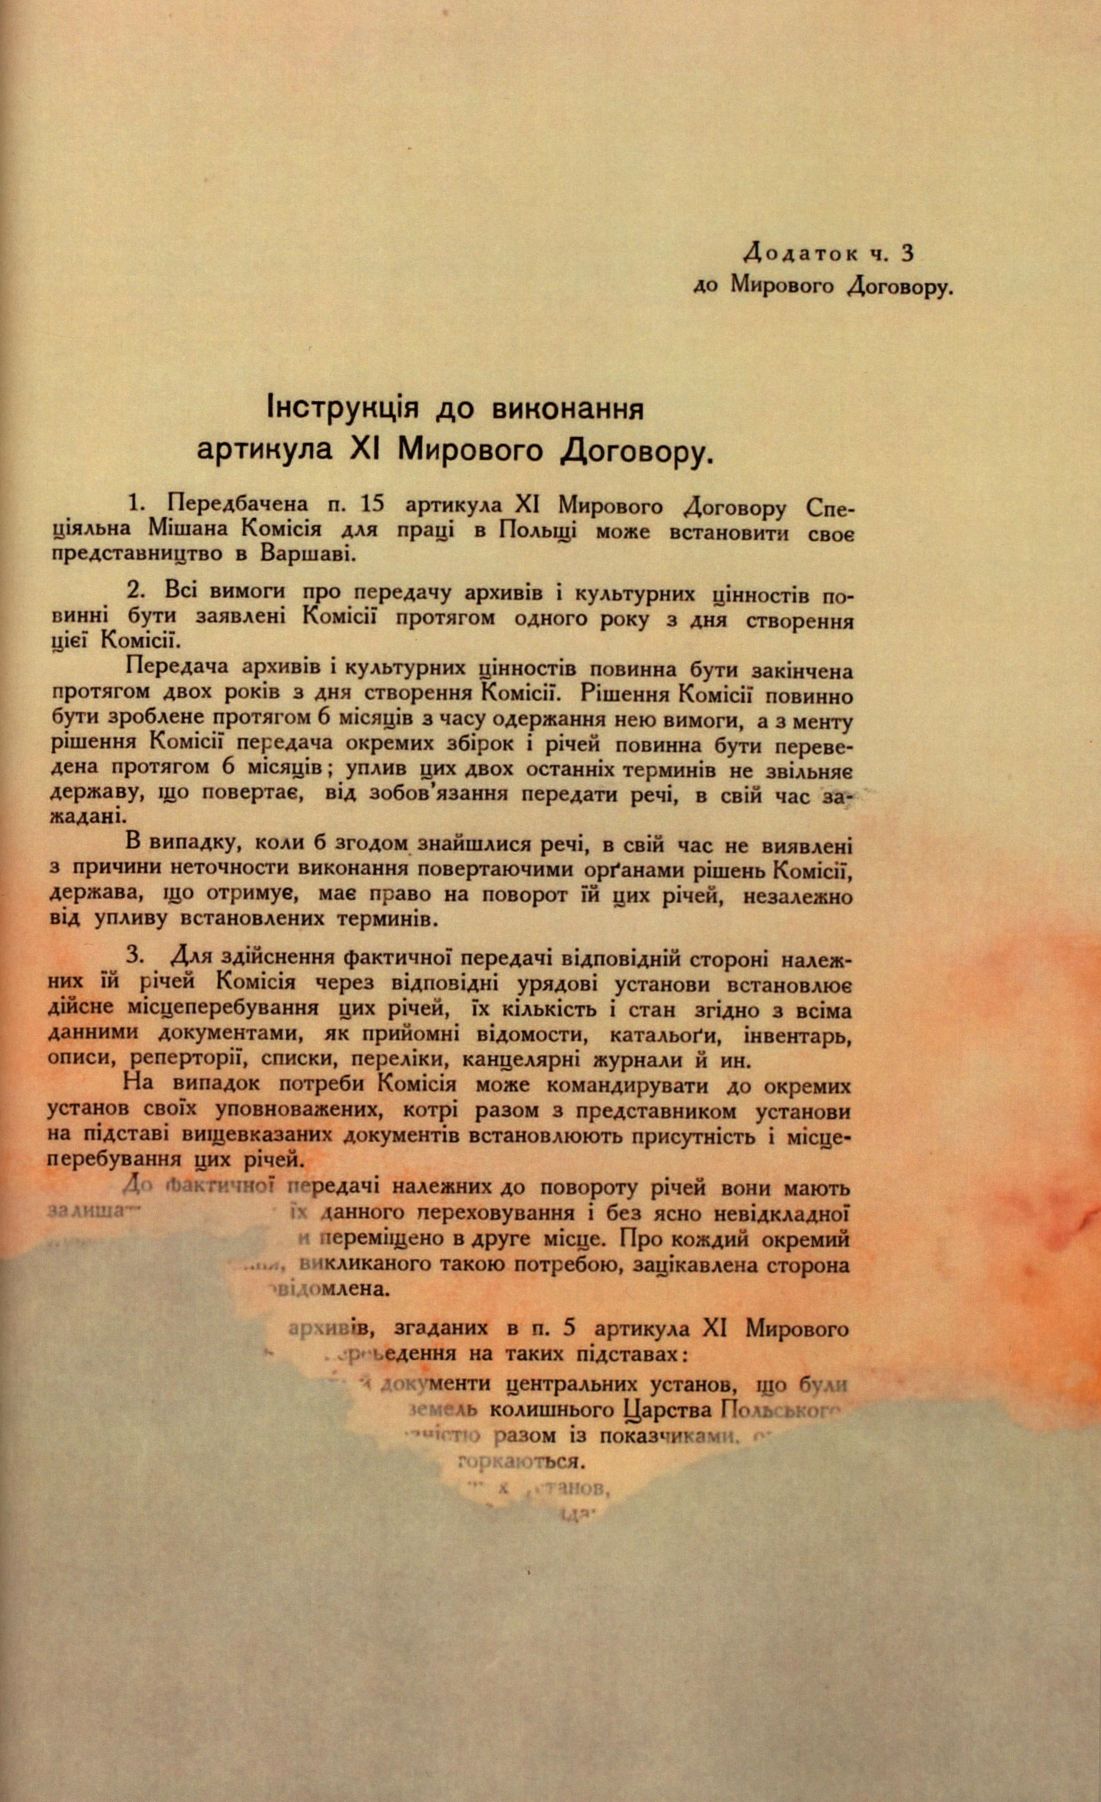 Traktat Pokoju między Polską a Rosją i Ukrainą podpisany w Rydze dnia 18 marca 1921 roku, s. 58, MSZ, sygn. 6739.